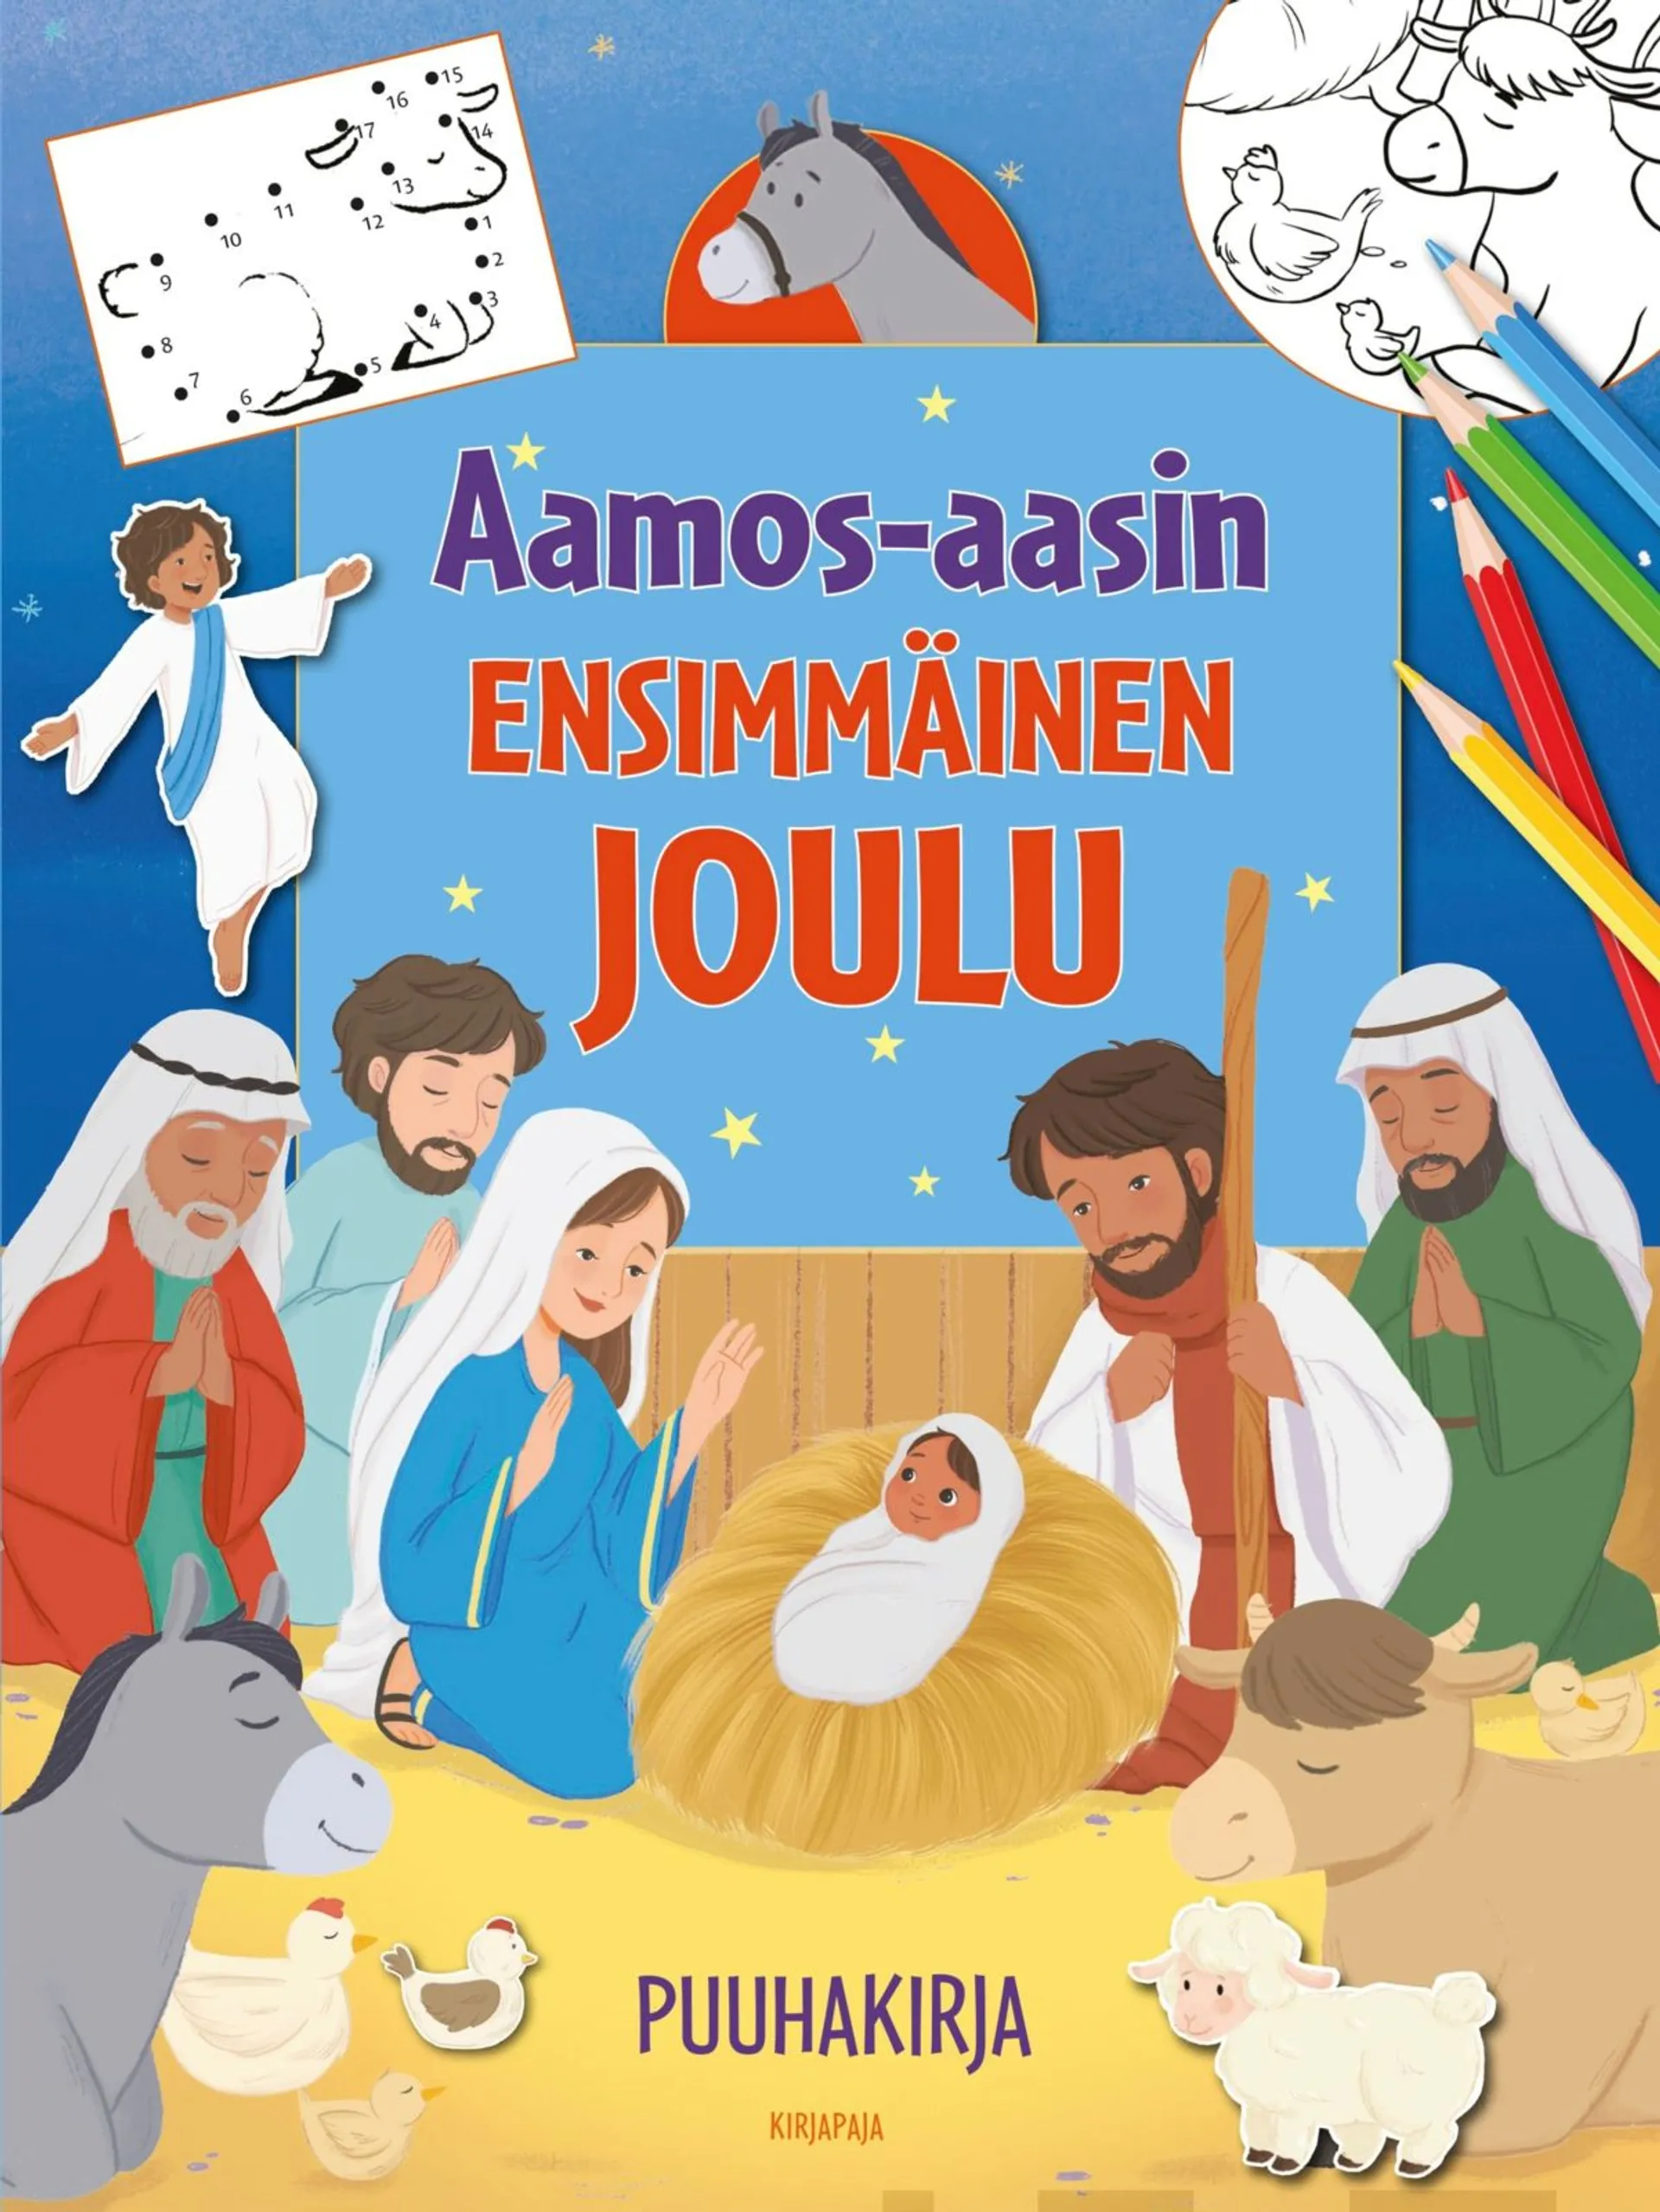 Senio, Aamos-aasin ensimmäinen joulu